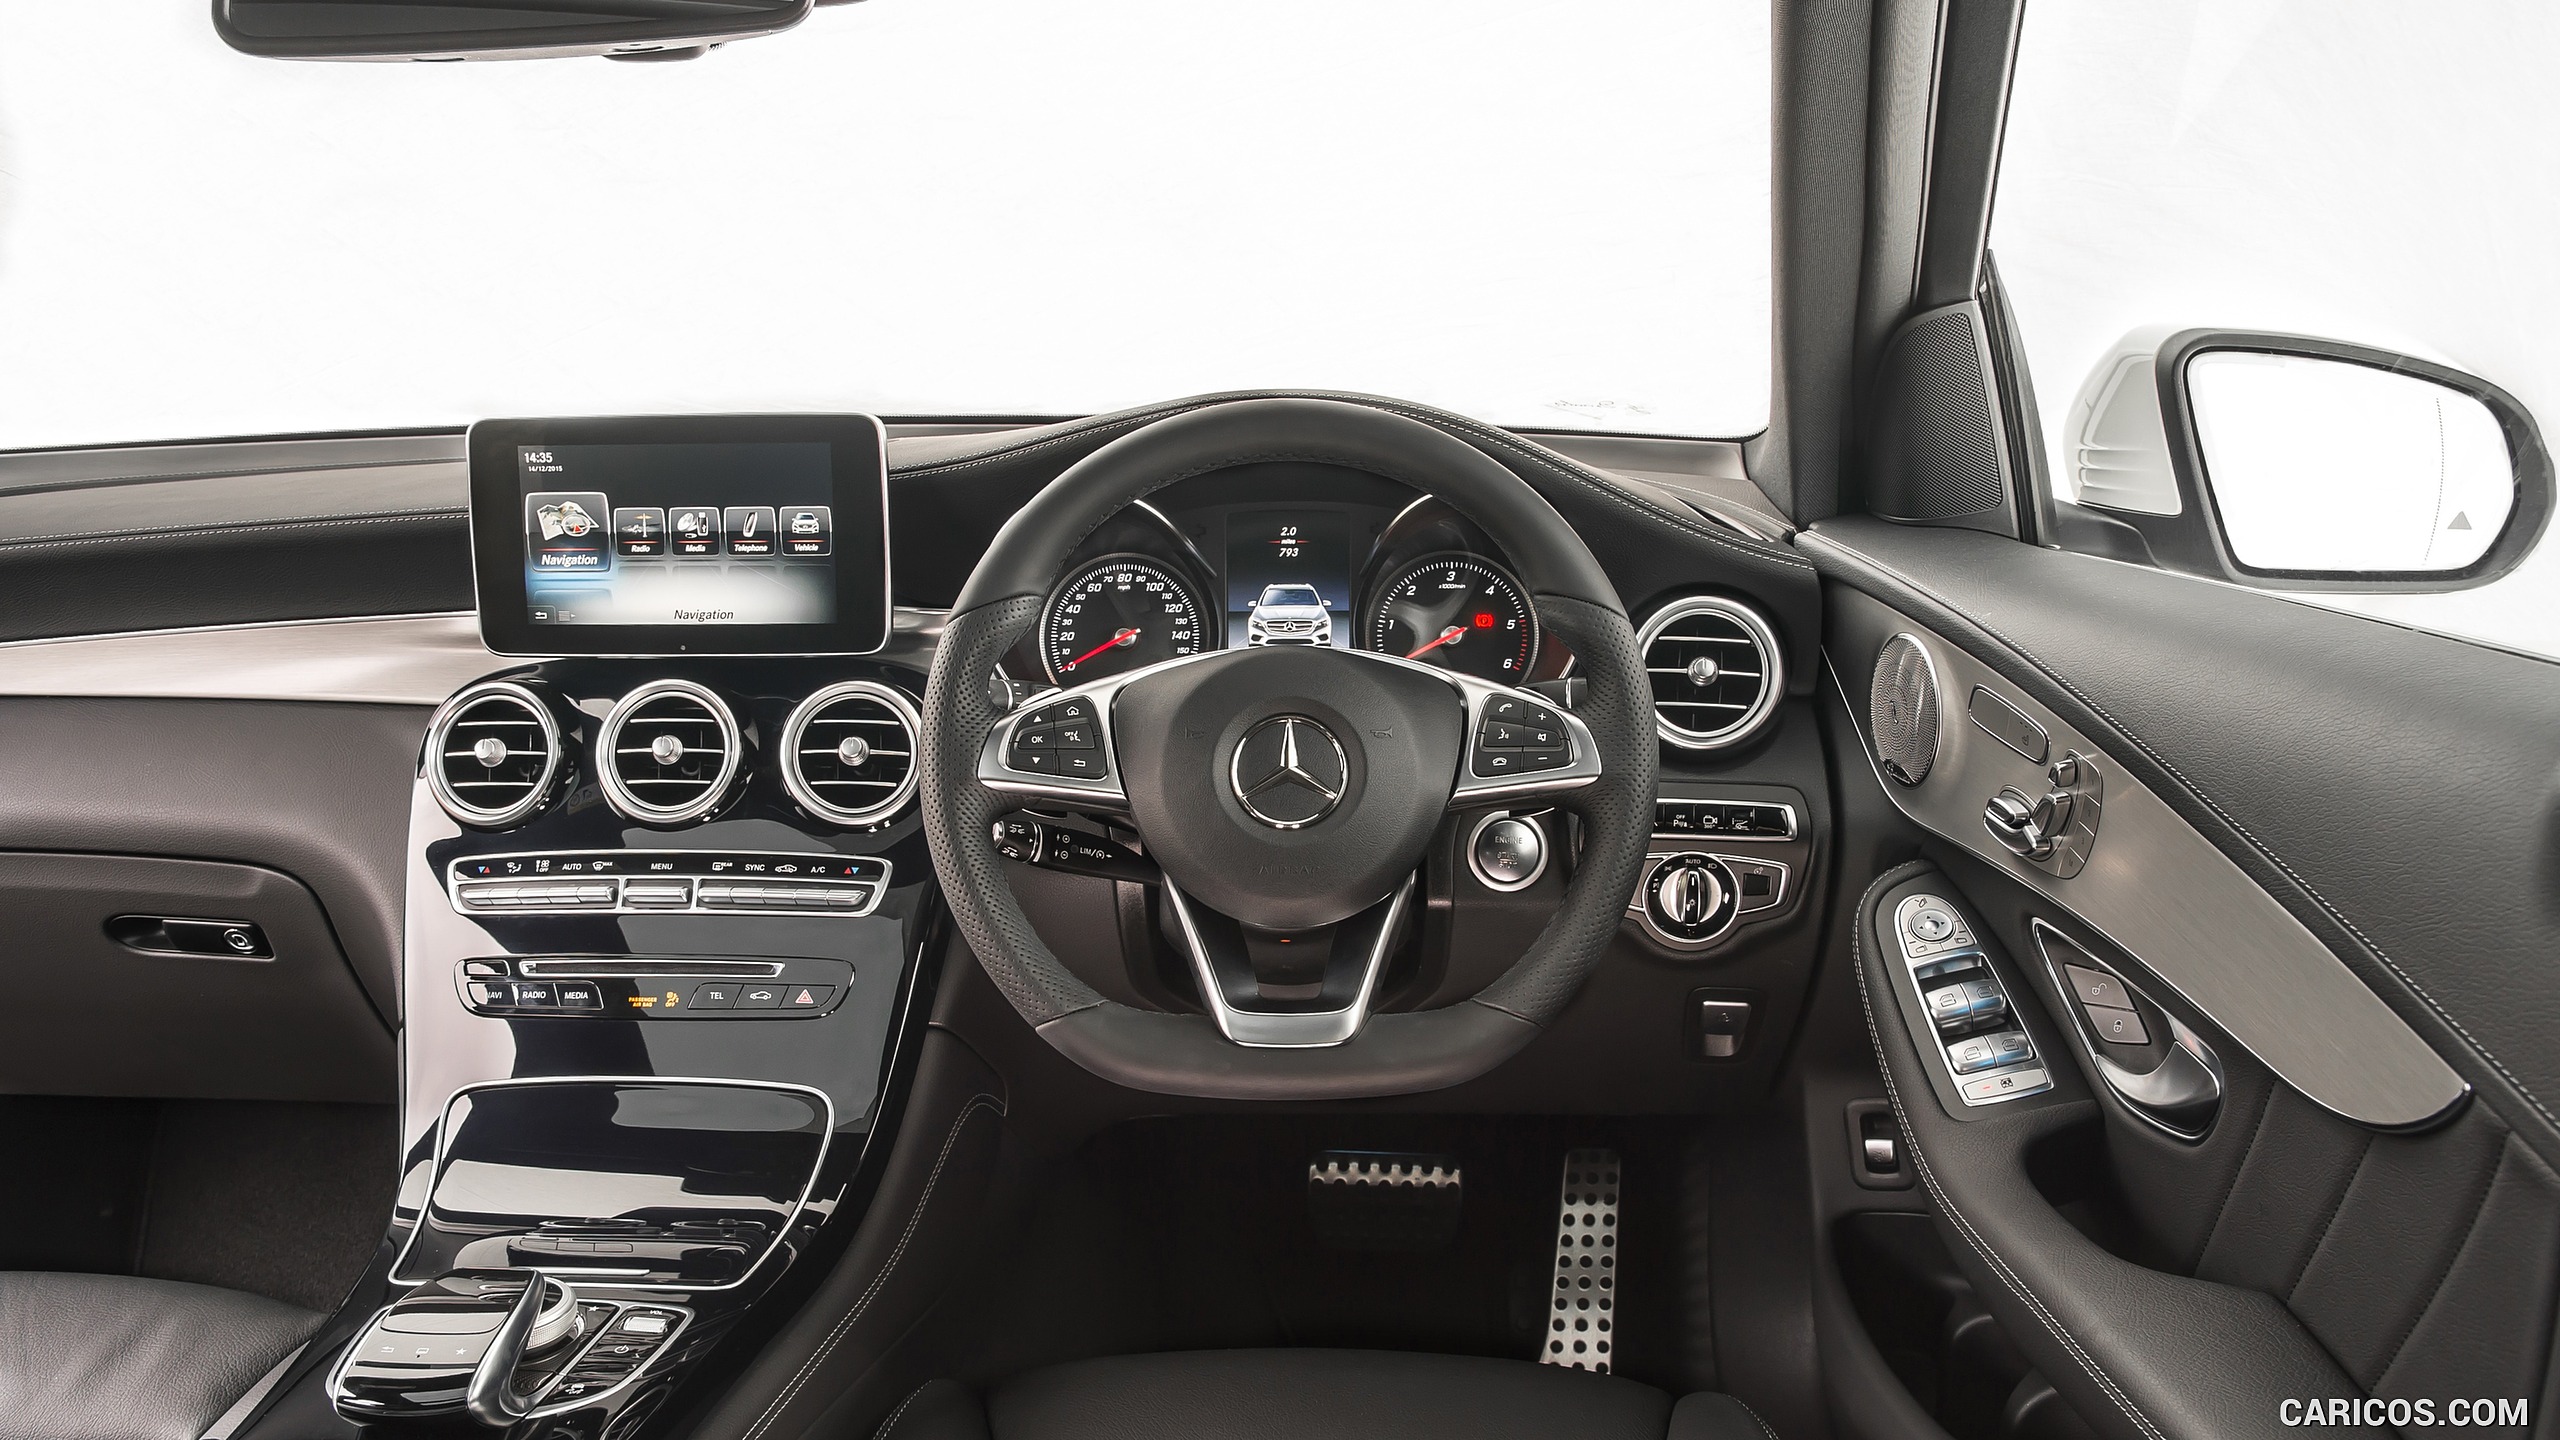 2016 Mercedes-Benz GLC 250d 4MATIC AMG Line (UK-Spec) - Interior, Cockpit, #99 of 130